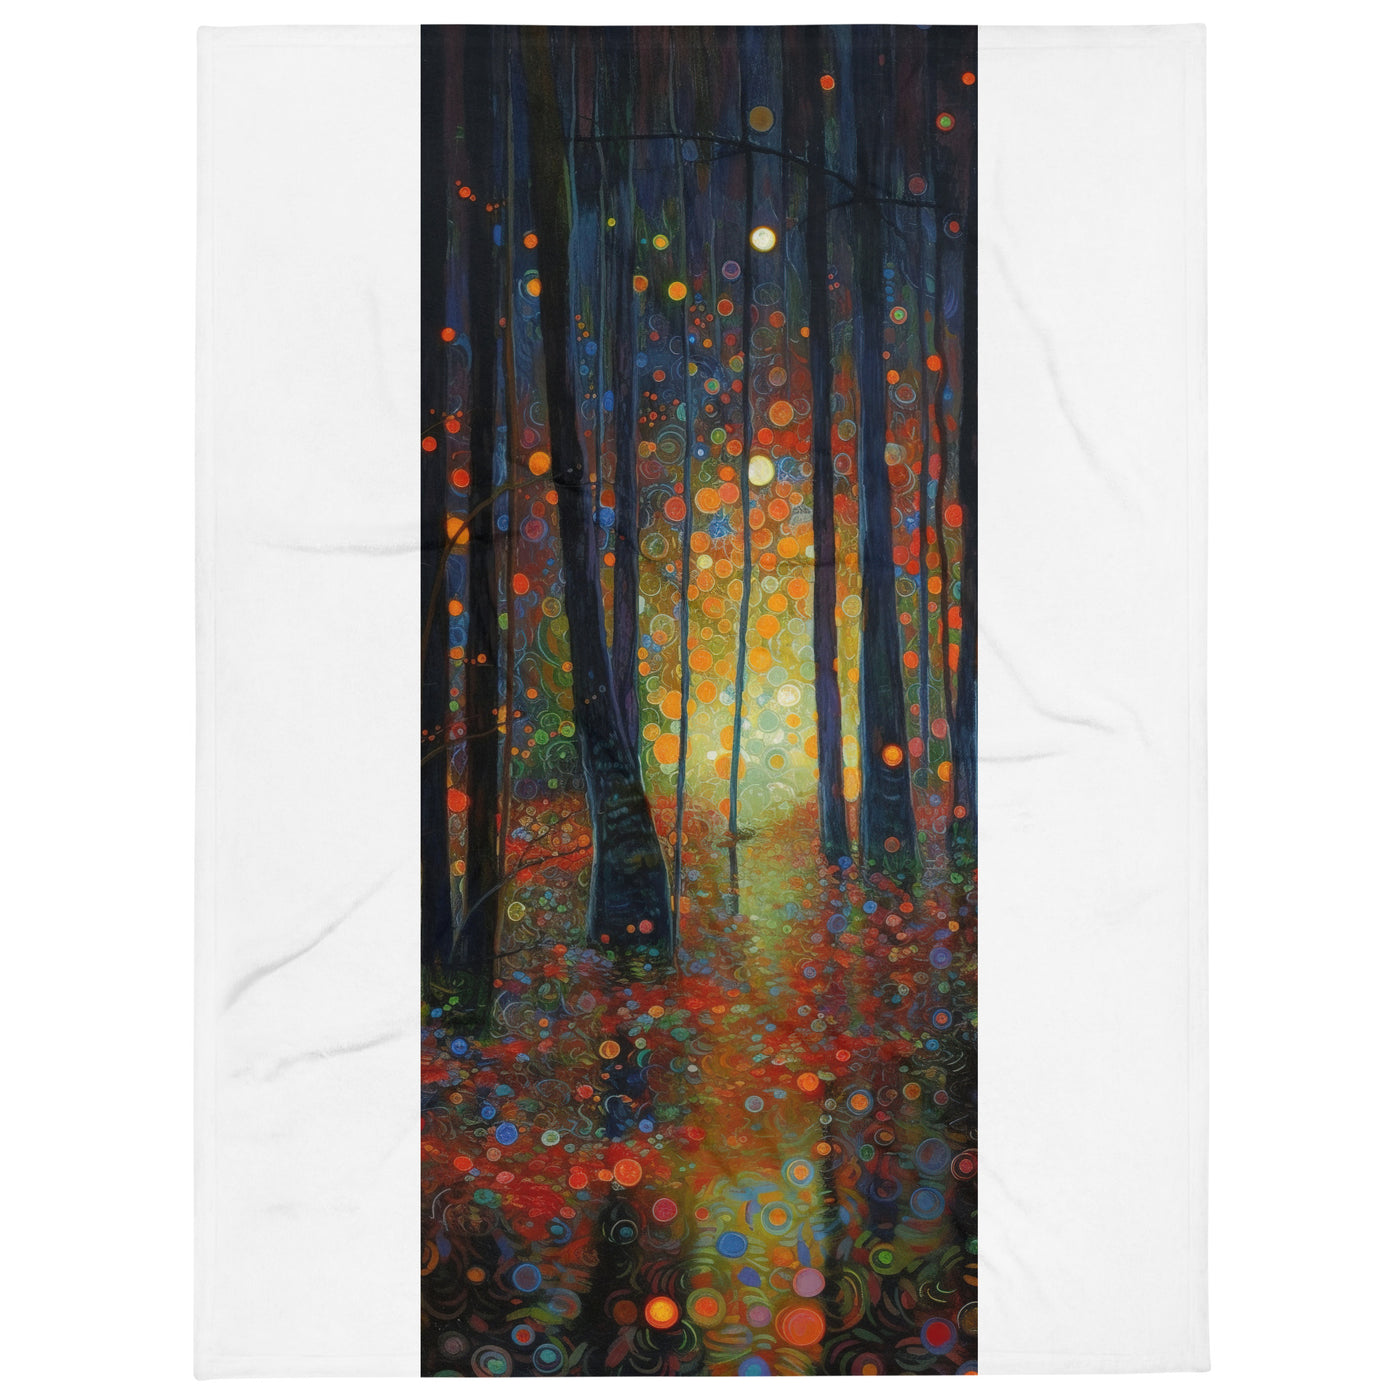 Wald voller Bäume - Herbstliche Stimmung - Malerei - Überwurfdecke camping xxx 152.4 x 203.2 cm